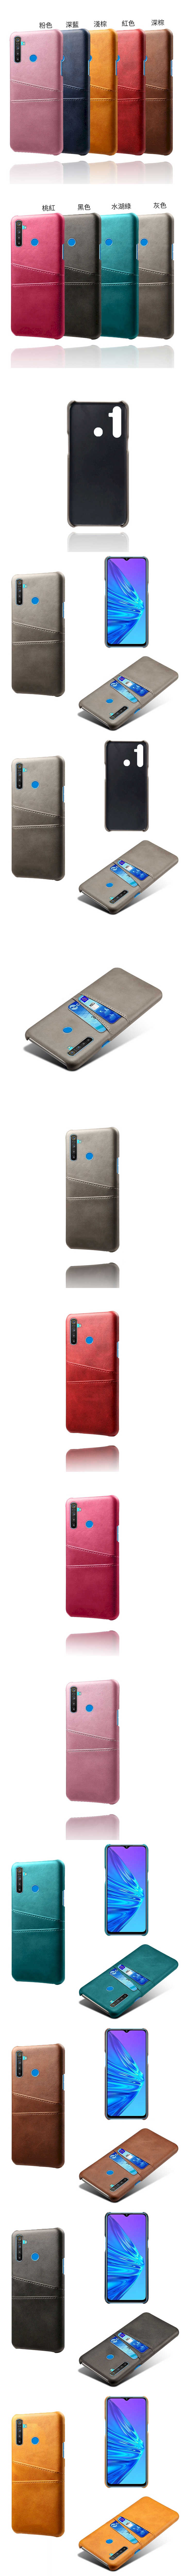 皮革保護殼(PLAIN) - 牛皮仿真皮紋雙插卡手機殼背蓋手機套